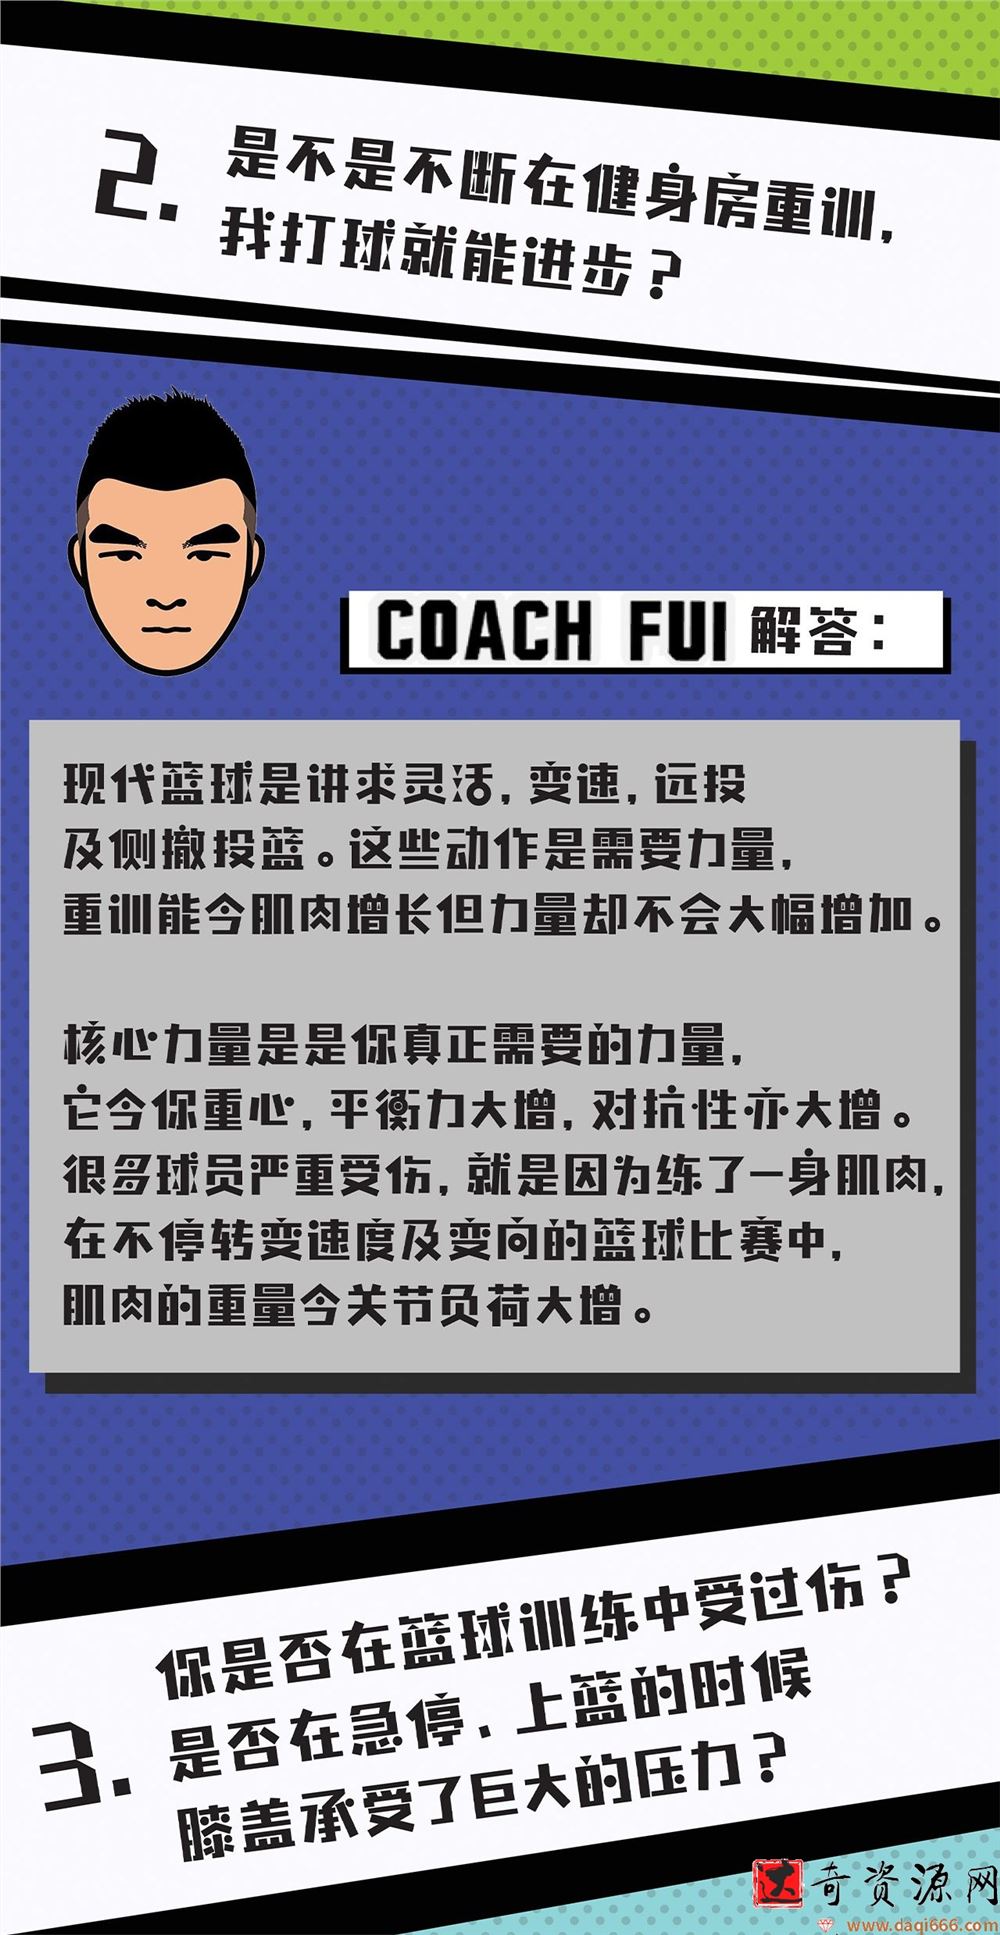 CoachFui《新单动投篮训练课》+《篮球核心力量技巧训练课》